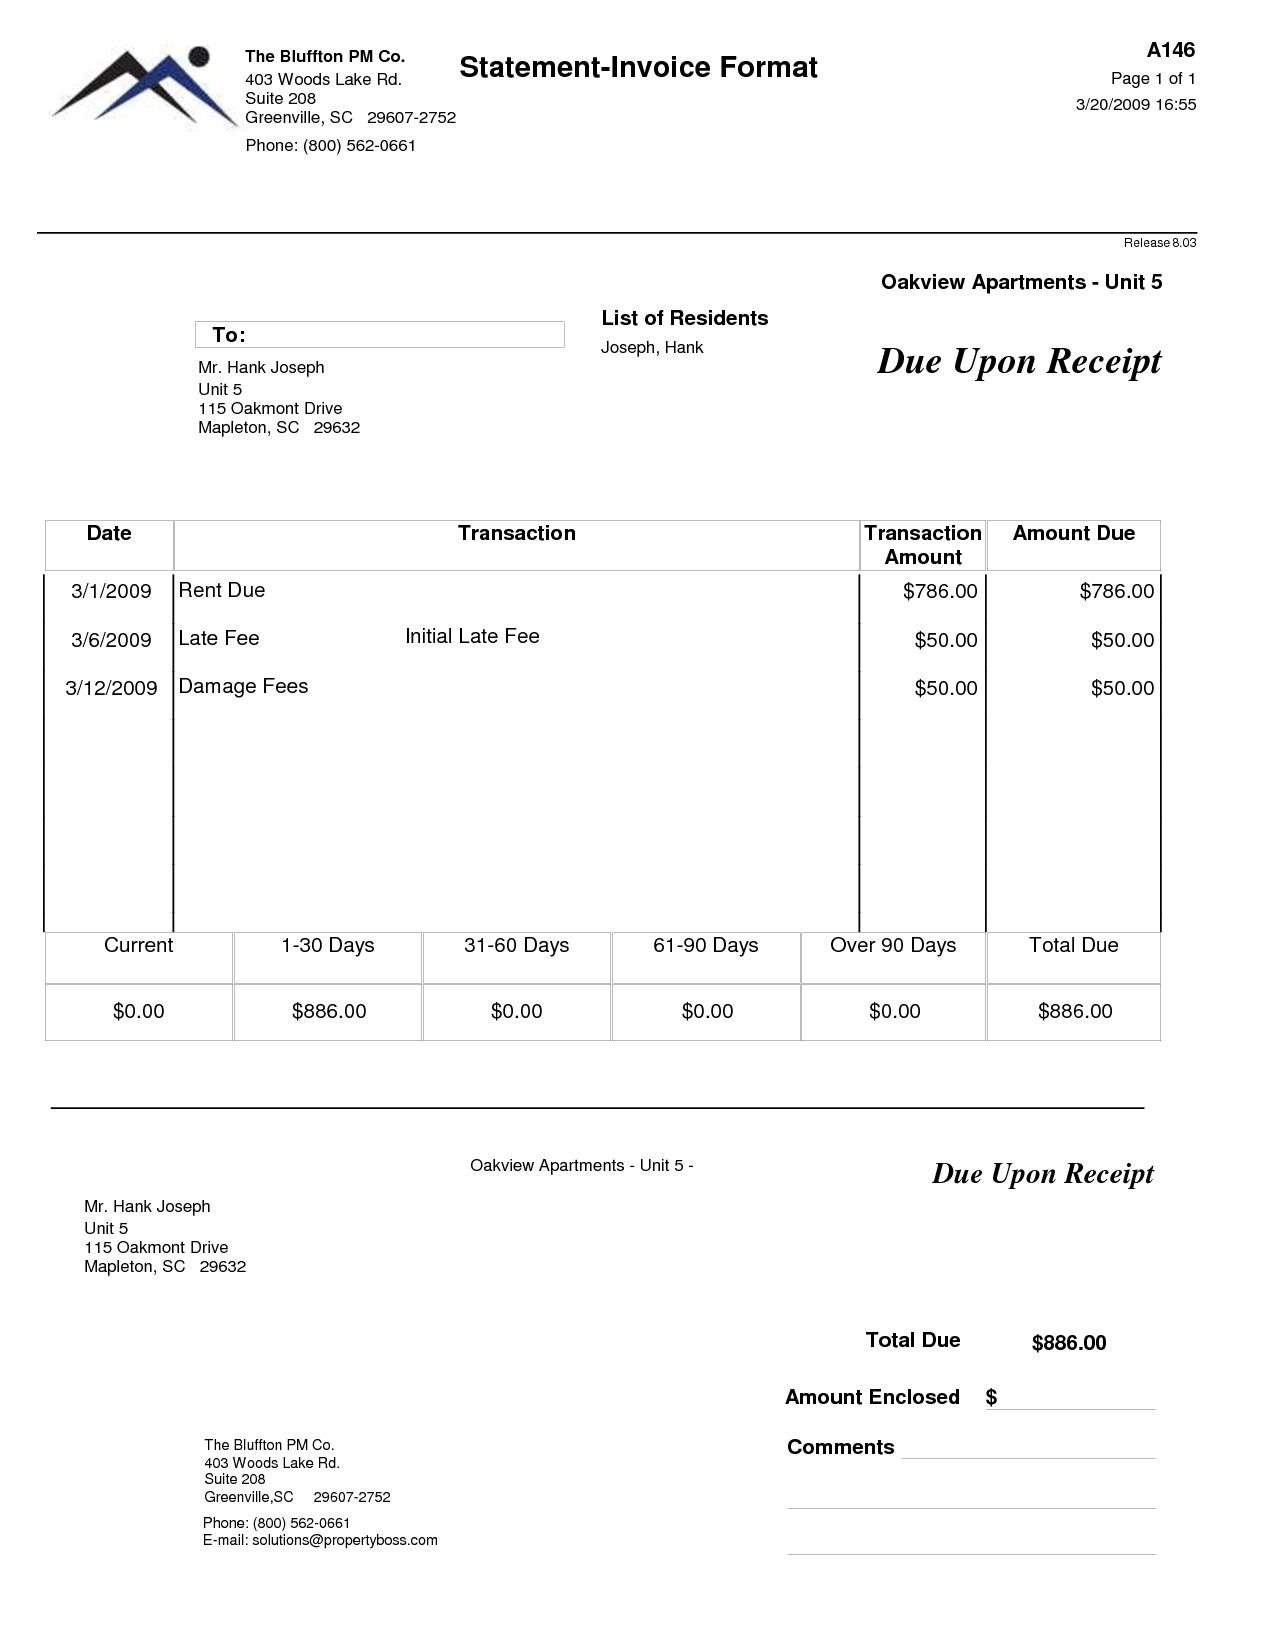 quickbooks invoice templates apartment rent invoice template invoice for rent